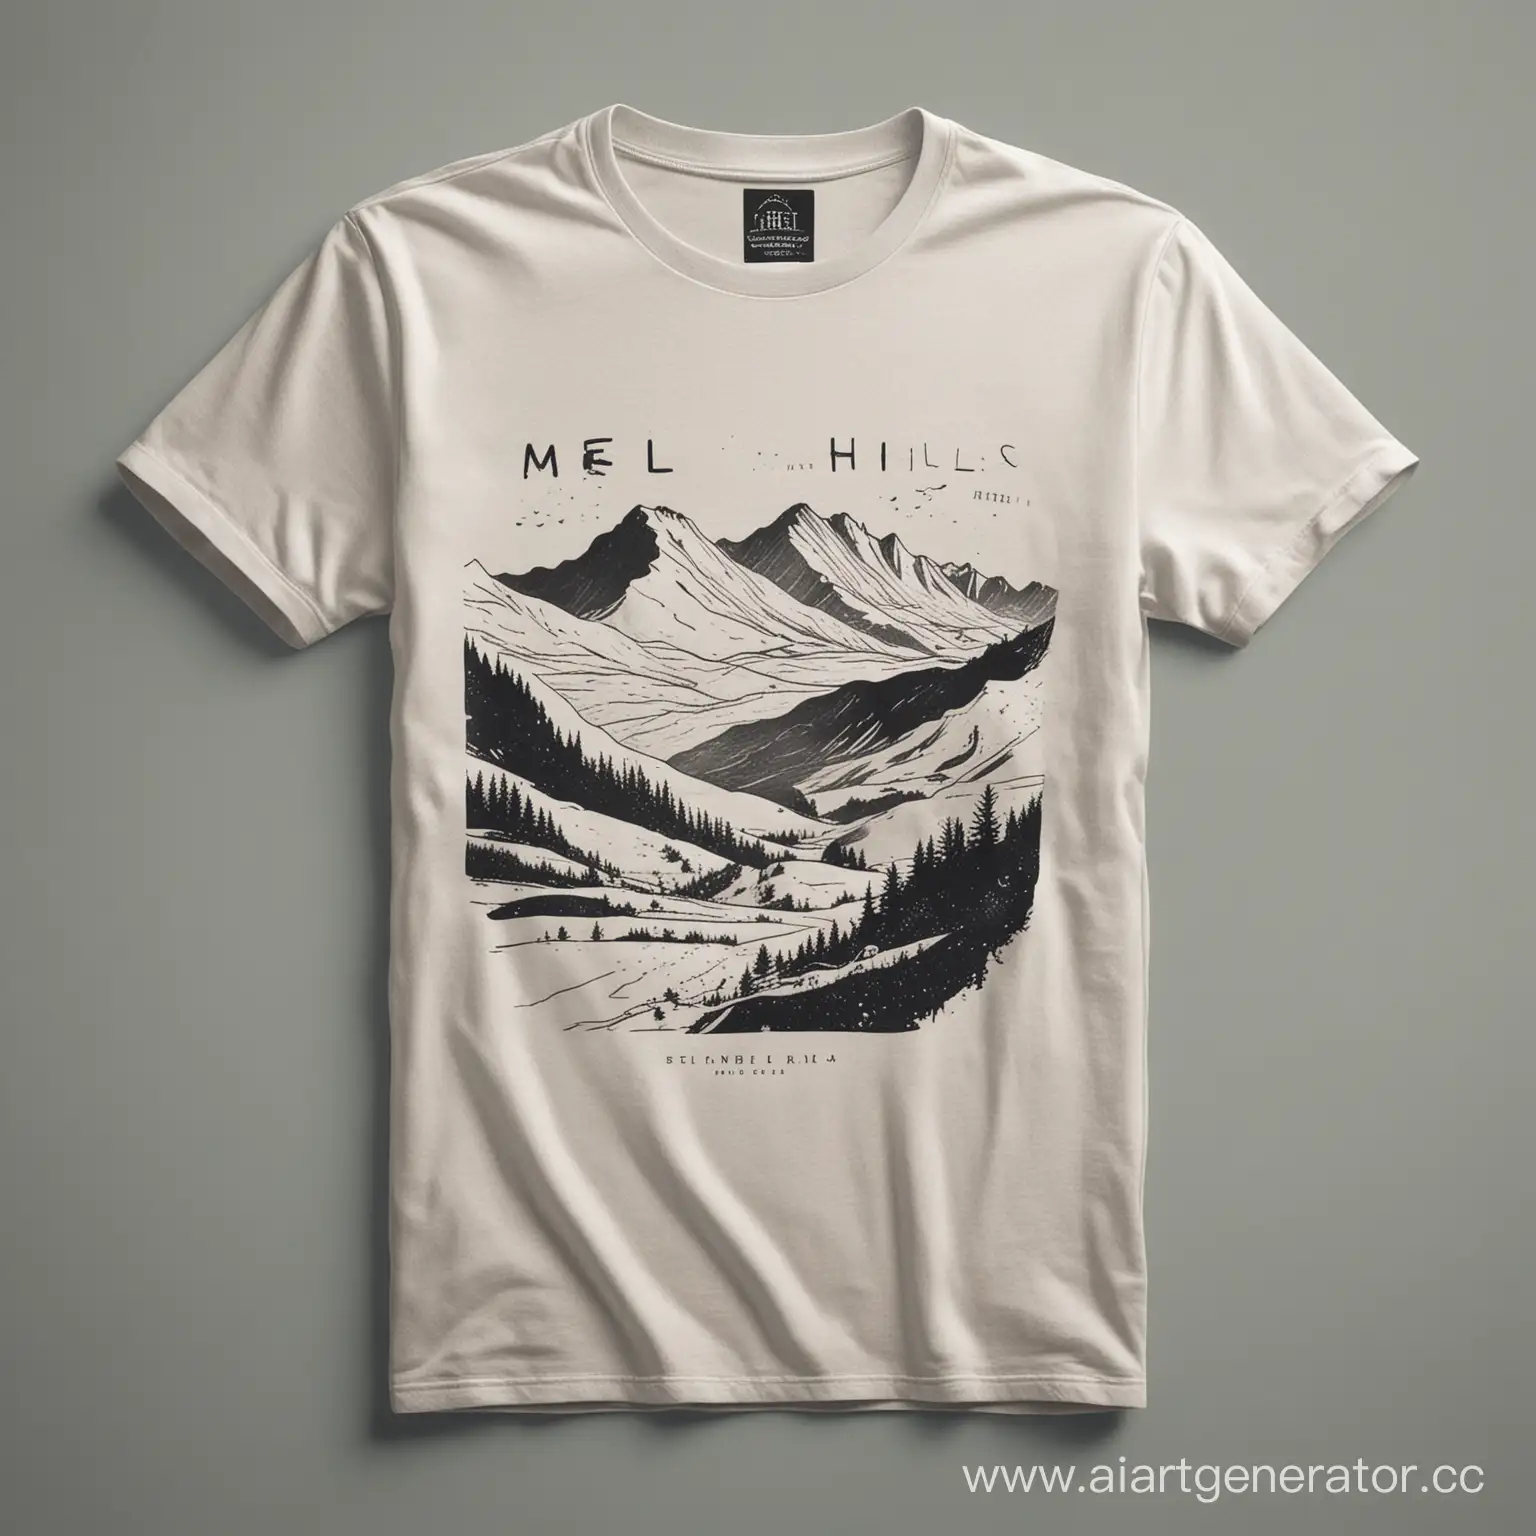 Минималистичный дизайн для футболки, Бренд MEL, пусть дизайн будет связан с меловыми холмами